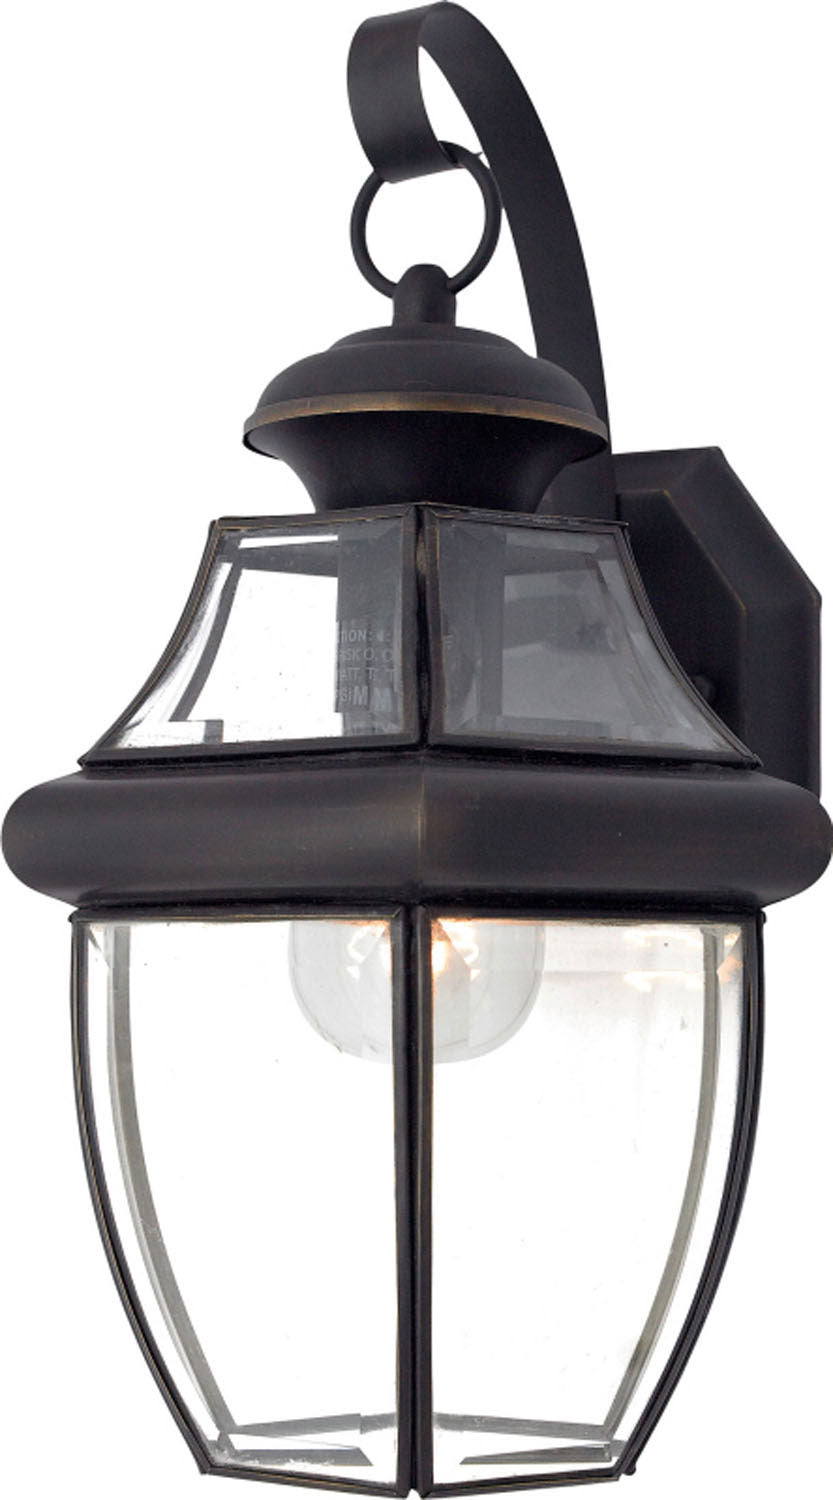 Quoizel - NY8316Z - One Light Outdoor Wall Lantern - Newbury